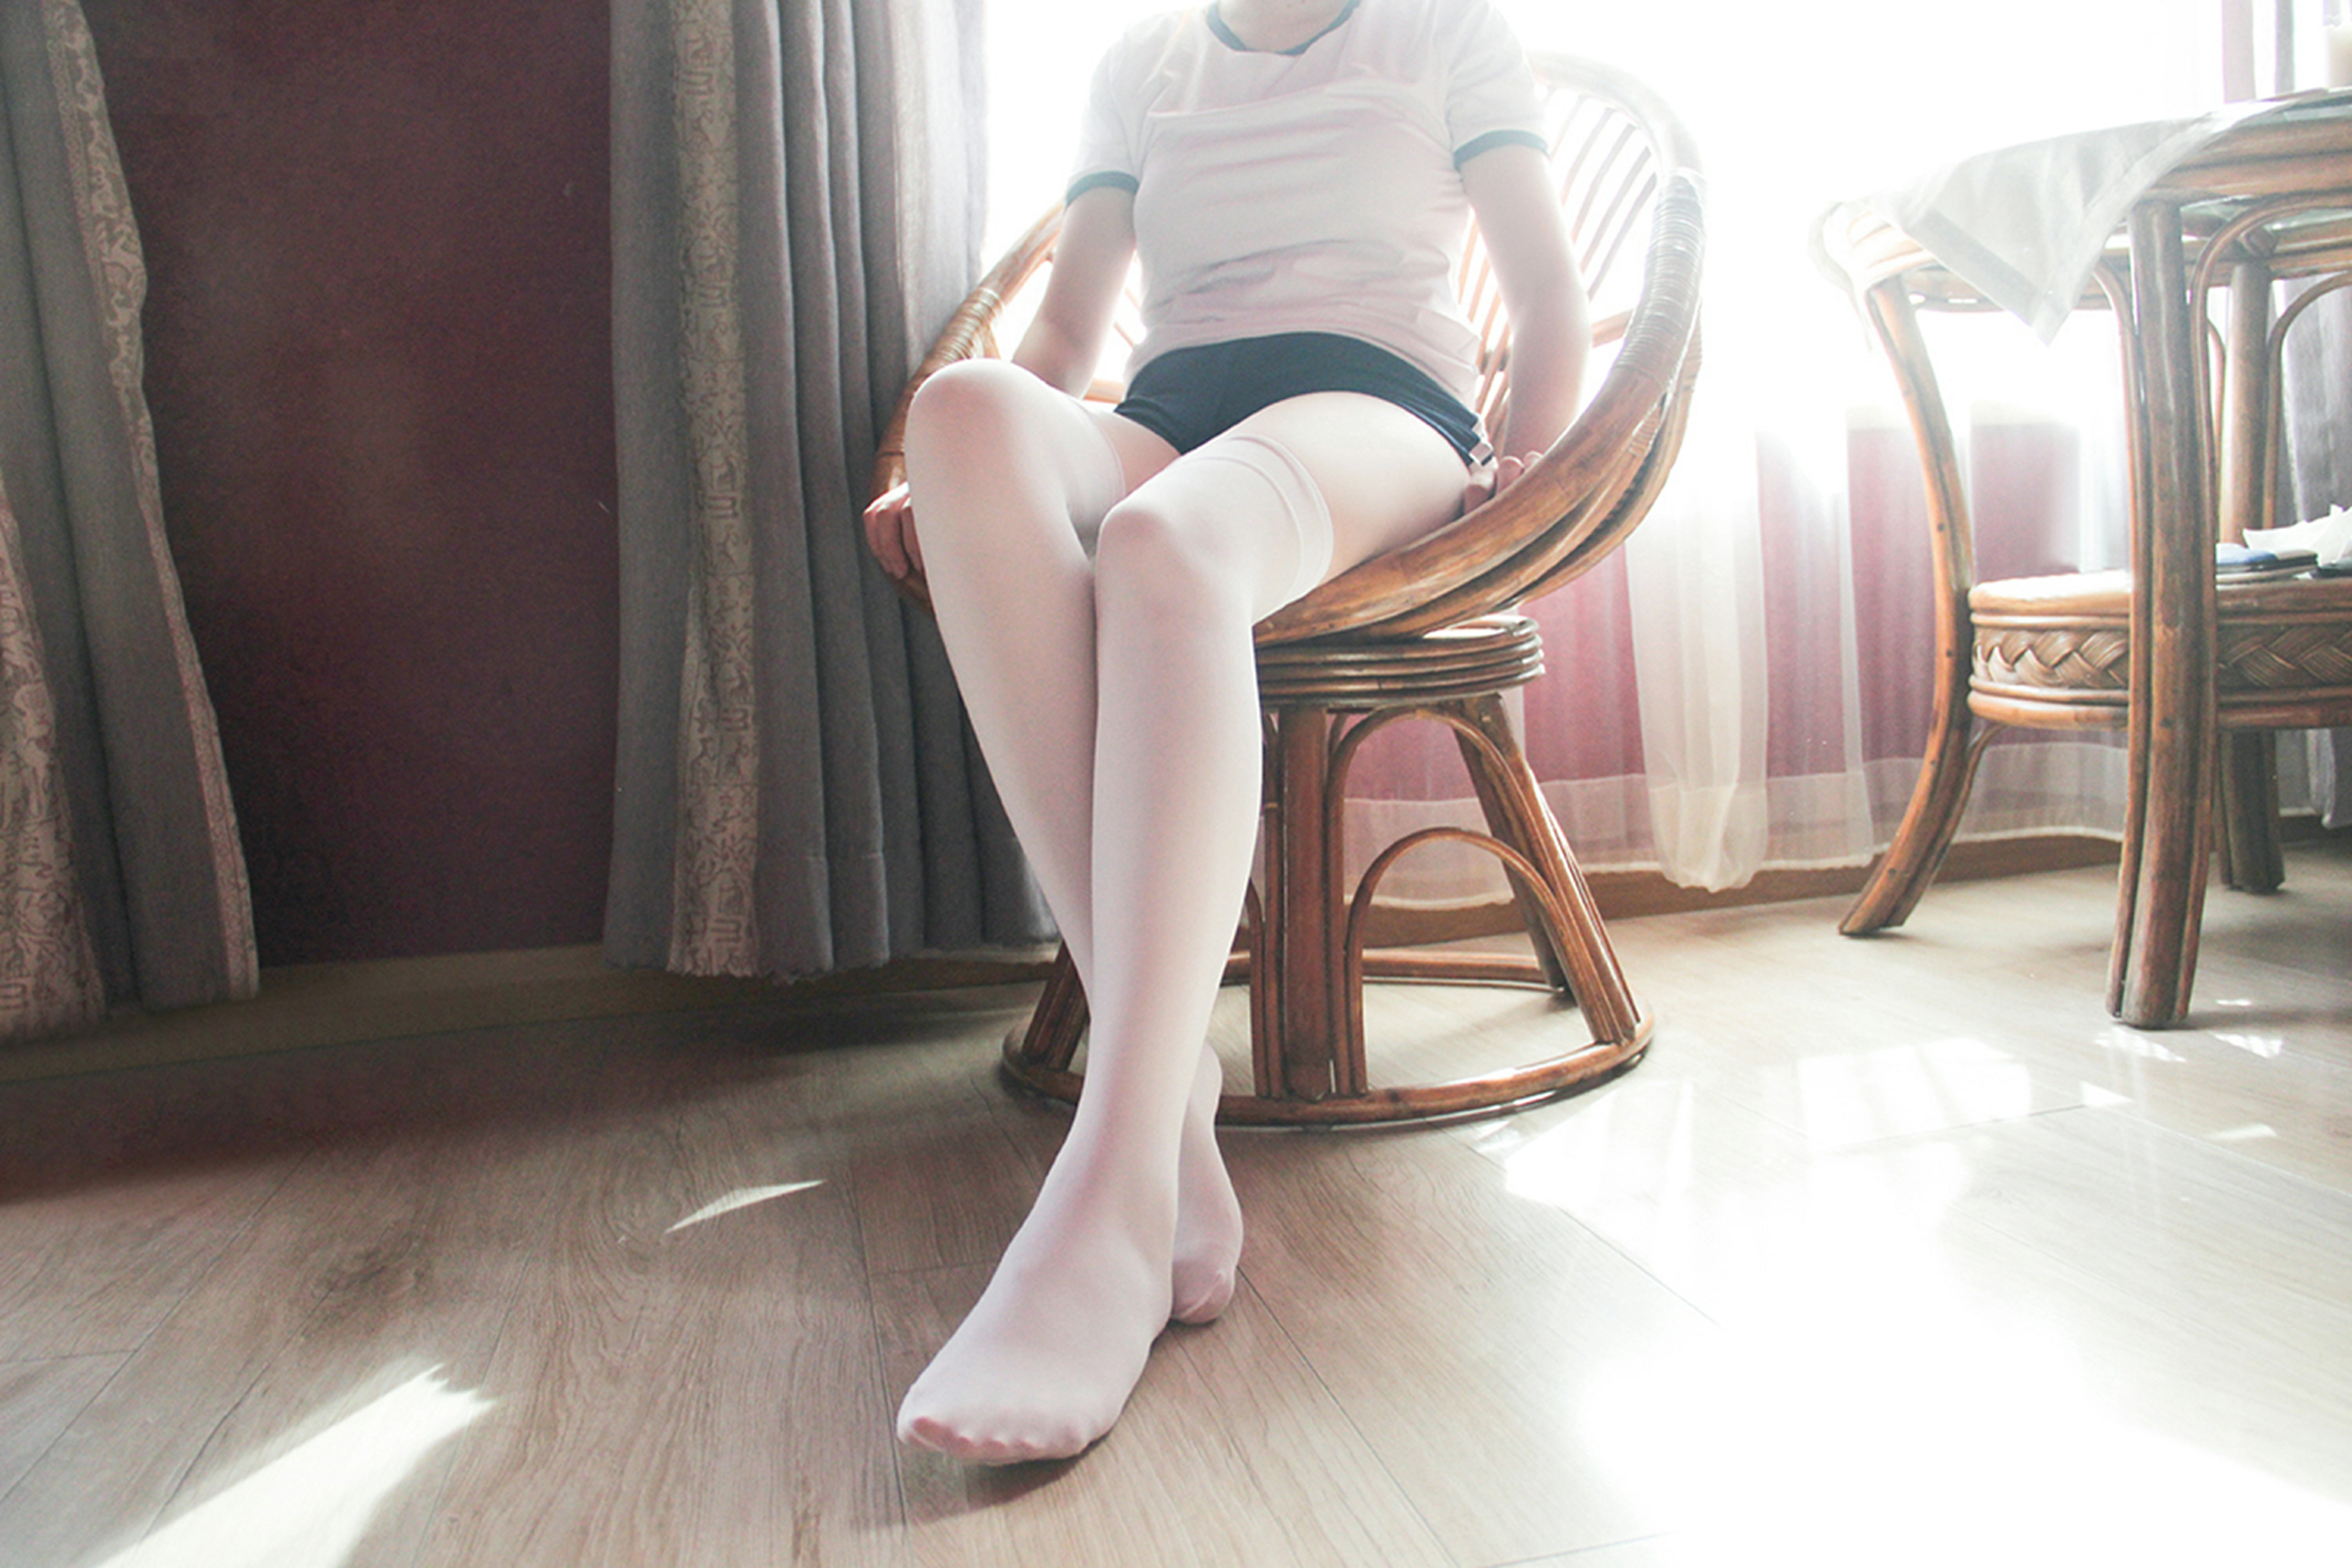 [风之领域]NO.169 清纯小萝莉 蓝色运动短裤加白色丝袜美腿性感私房写真集,